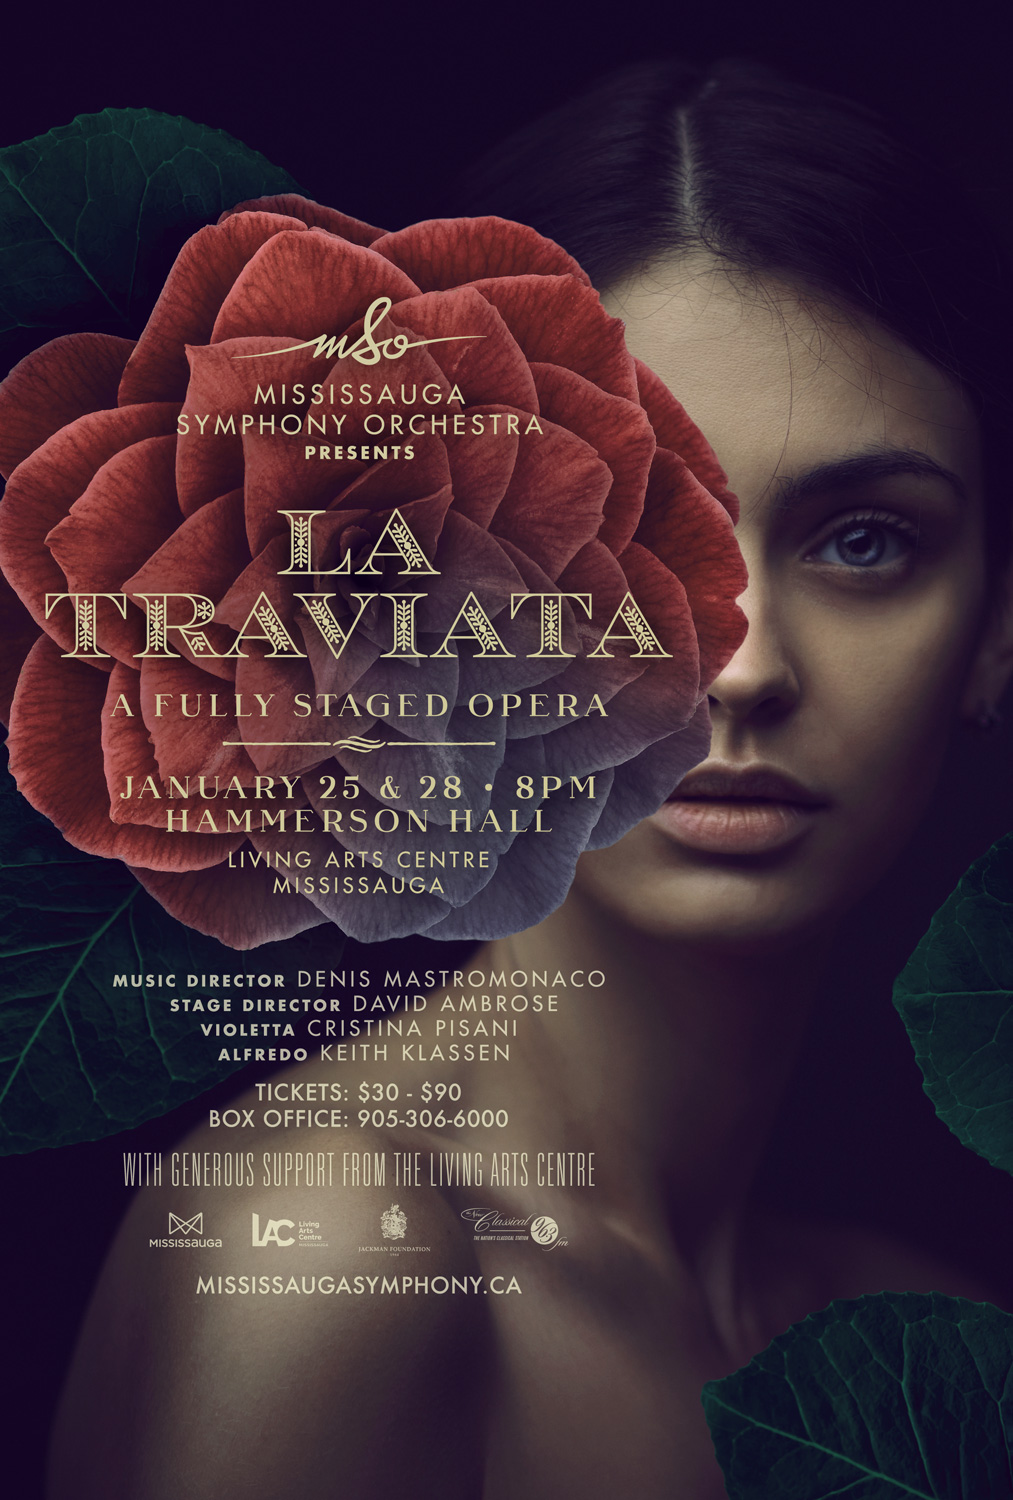 La Traviata Opera Poster